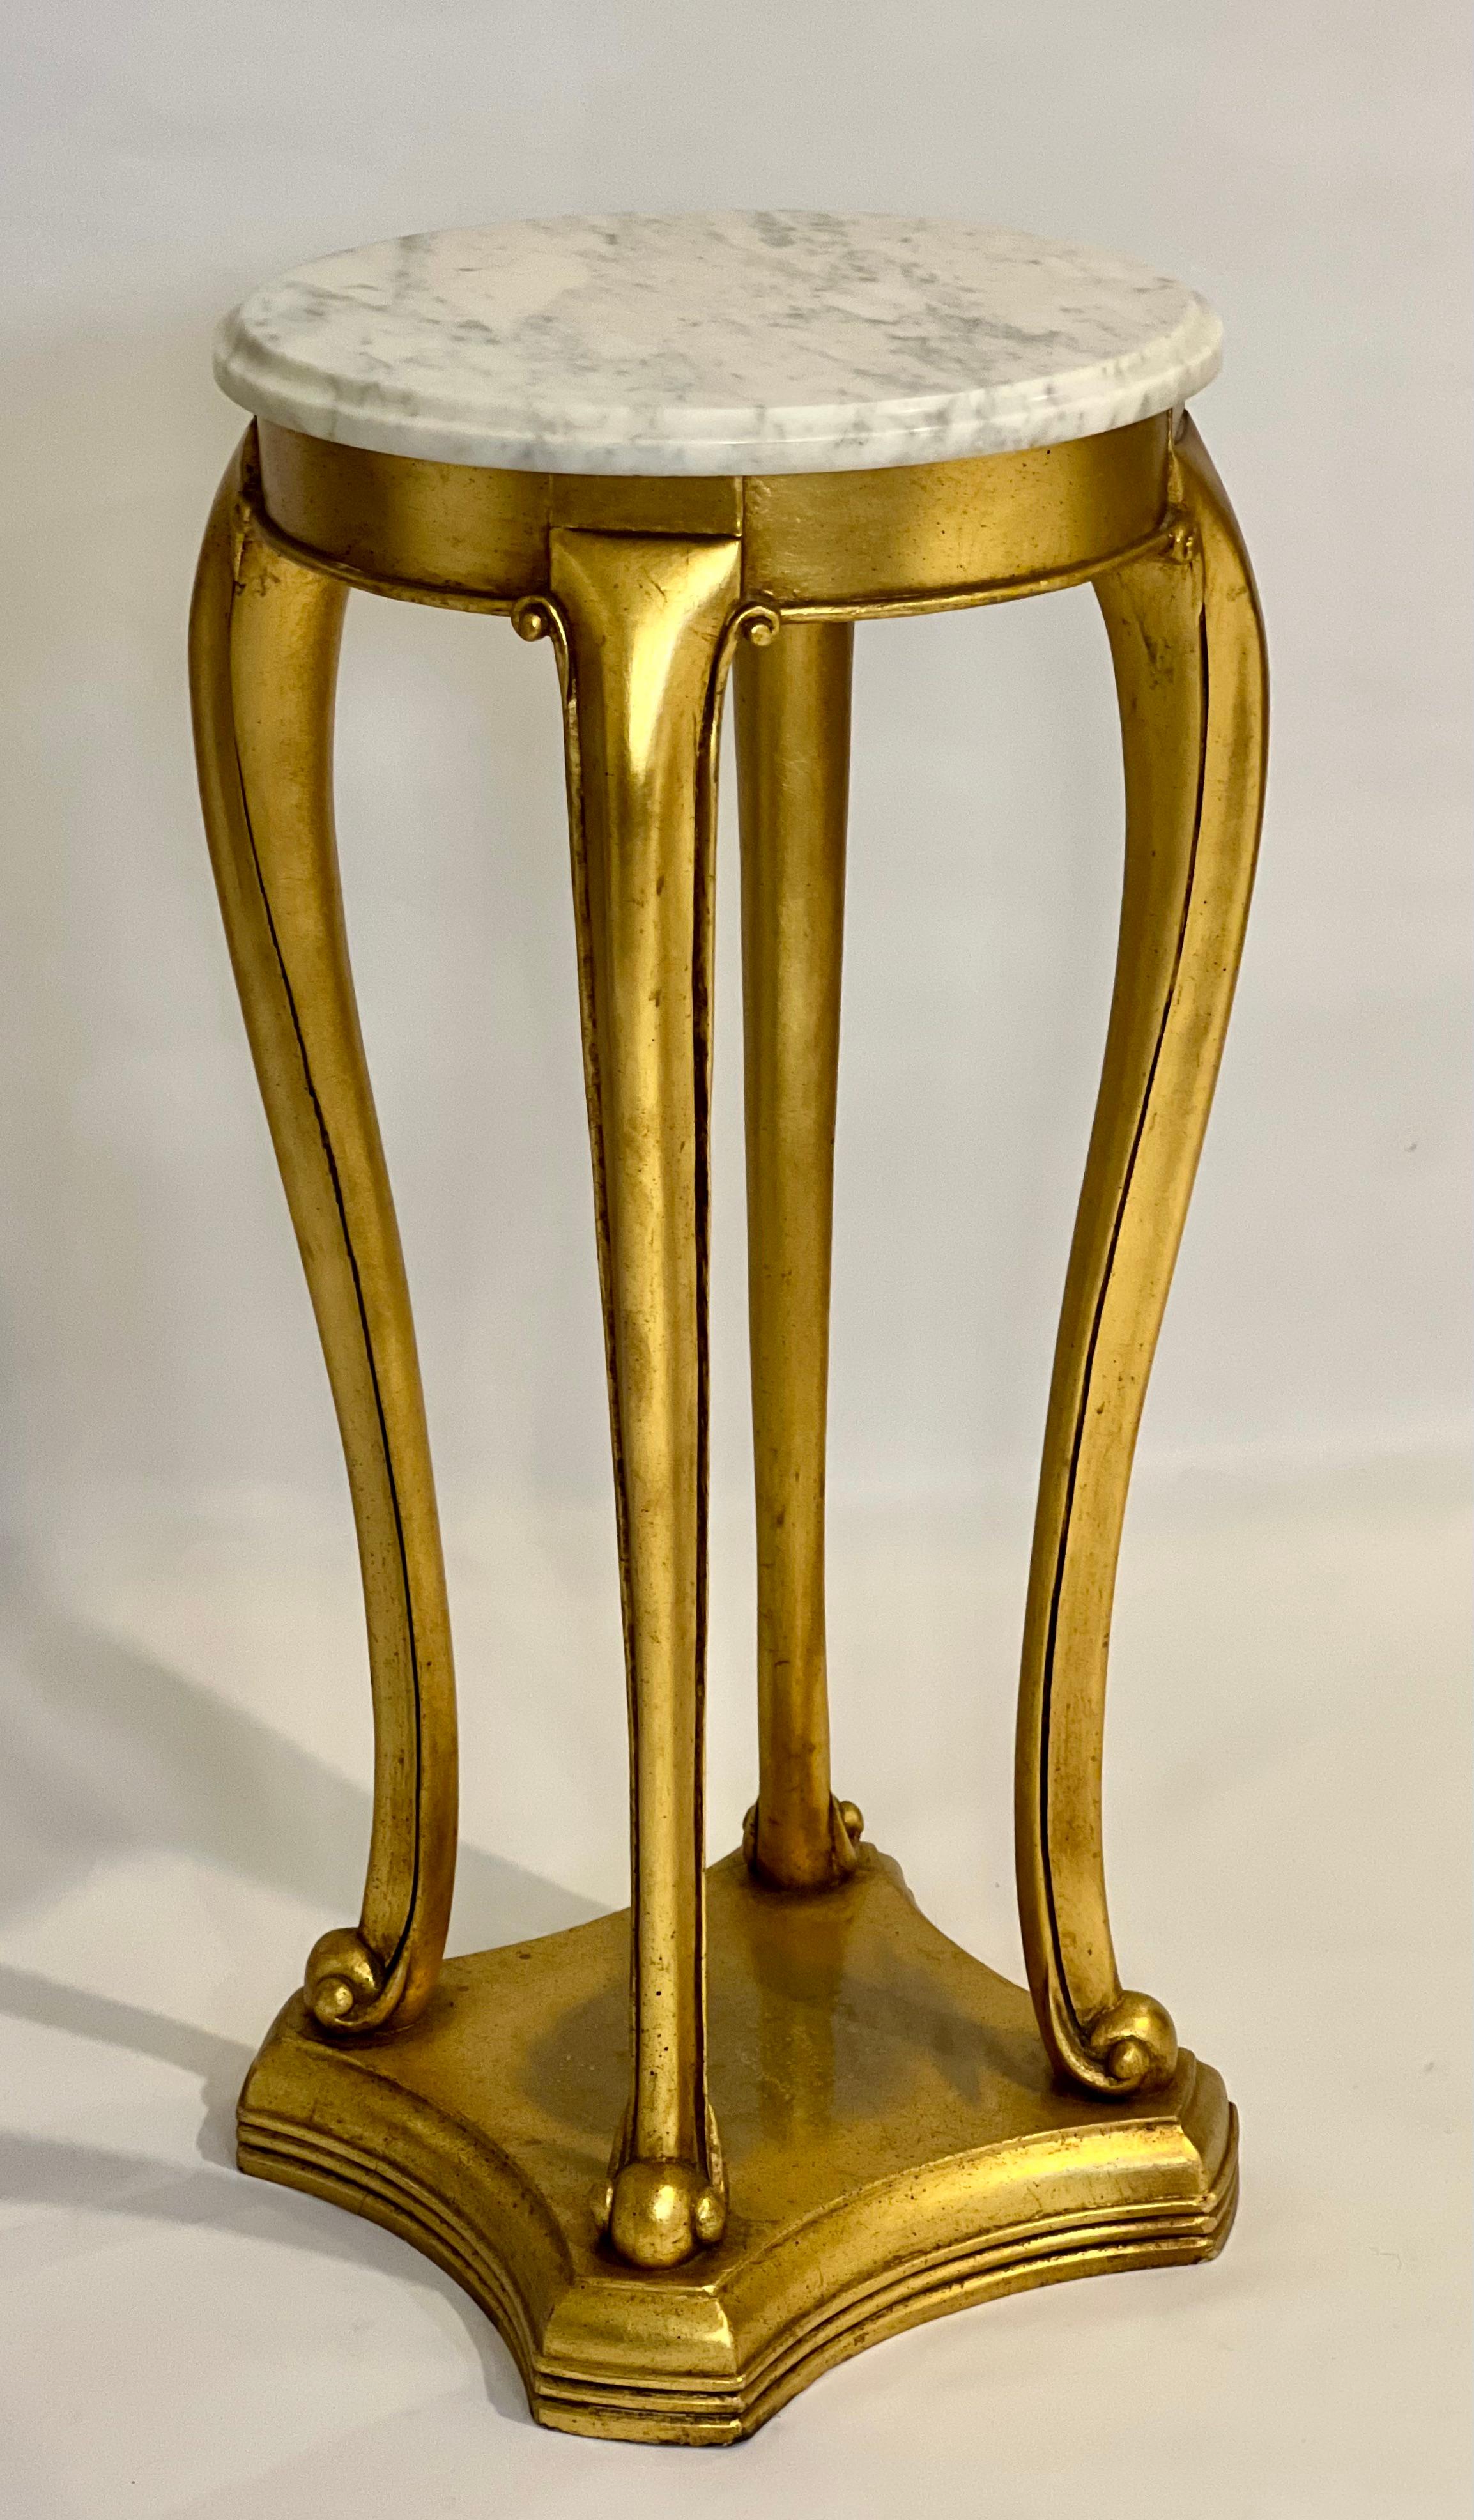 Antiker vergoldeter Holzmarmorsockel oder Pflanzenständer im Regency-Stil, ca. Ende des 19. Jahrhunderts.

Fantastischer vergoldeter Sockel mit Cabriole-Beinen und verschnörkelten Füßen auf einem nach innen gewölbten, abgestuften Sockel. Geschnitzte